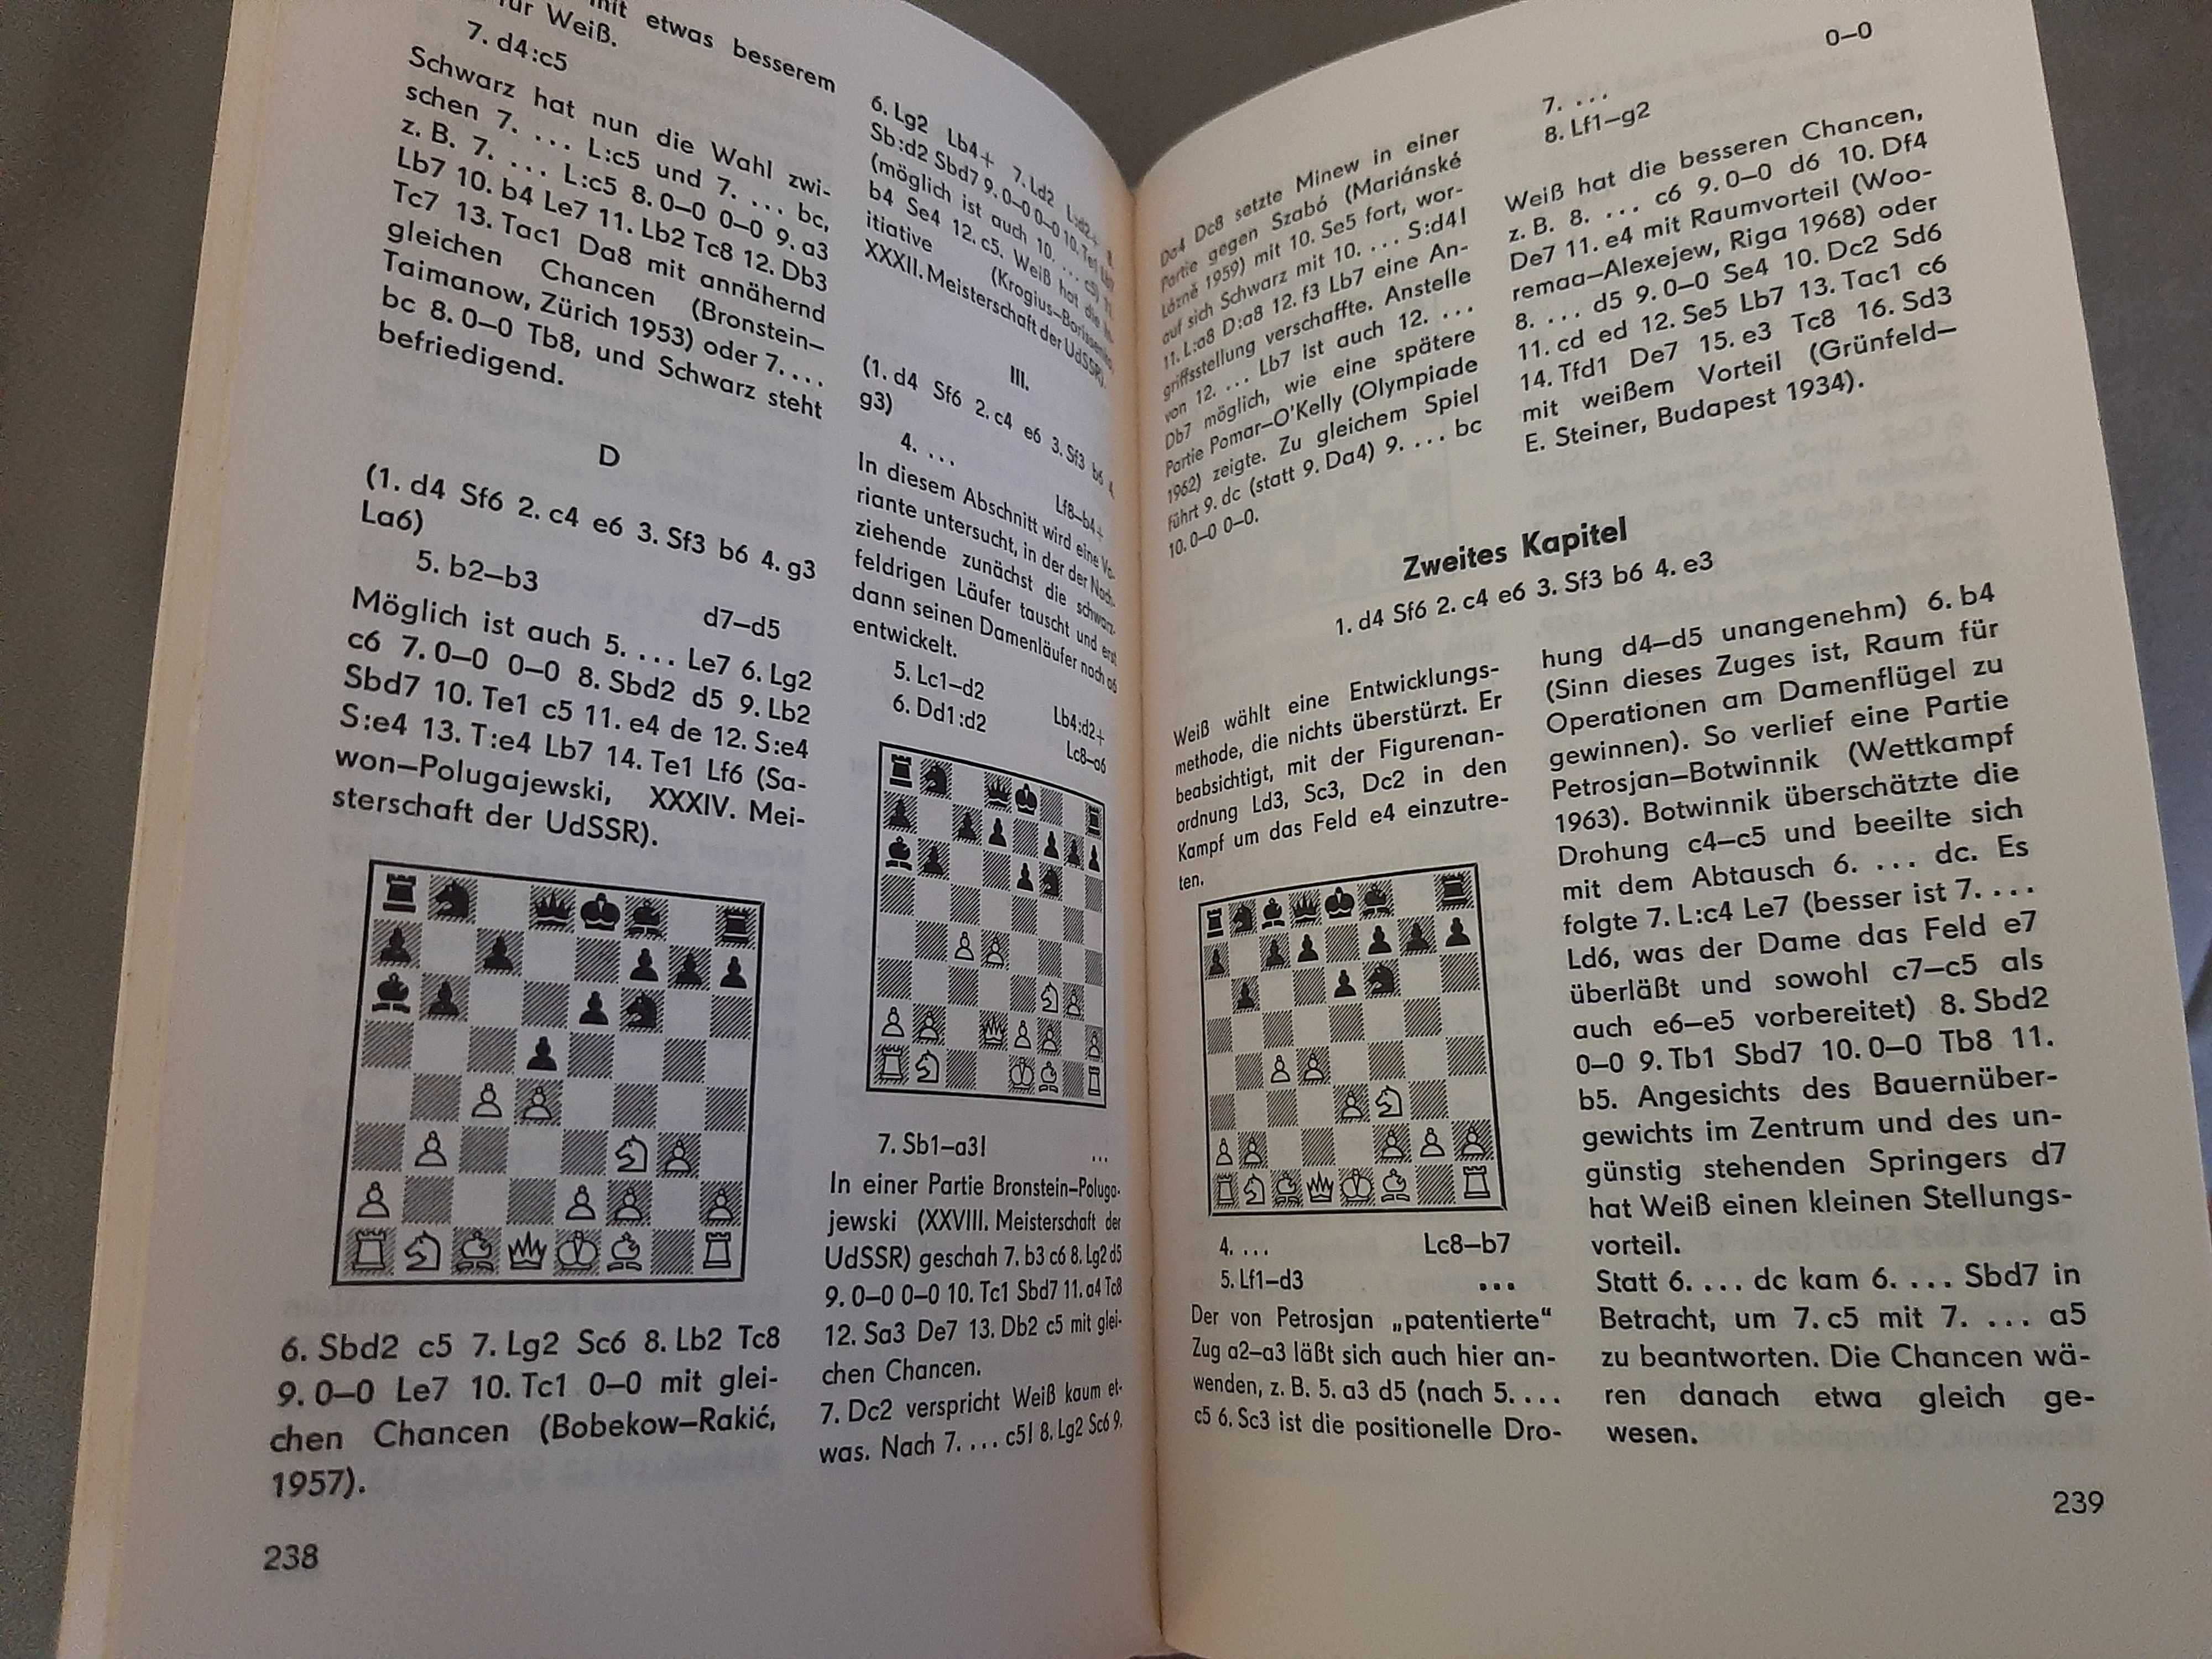 Книга по шахматам М.Тайманов "Ферзевый гамбит" 1970г. на нем. языке.